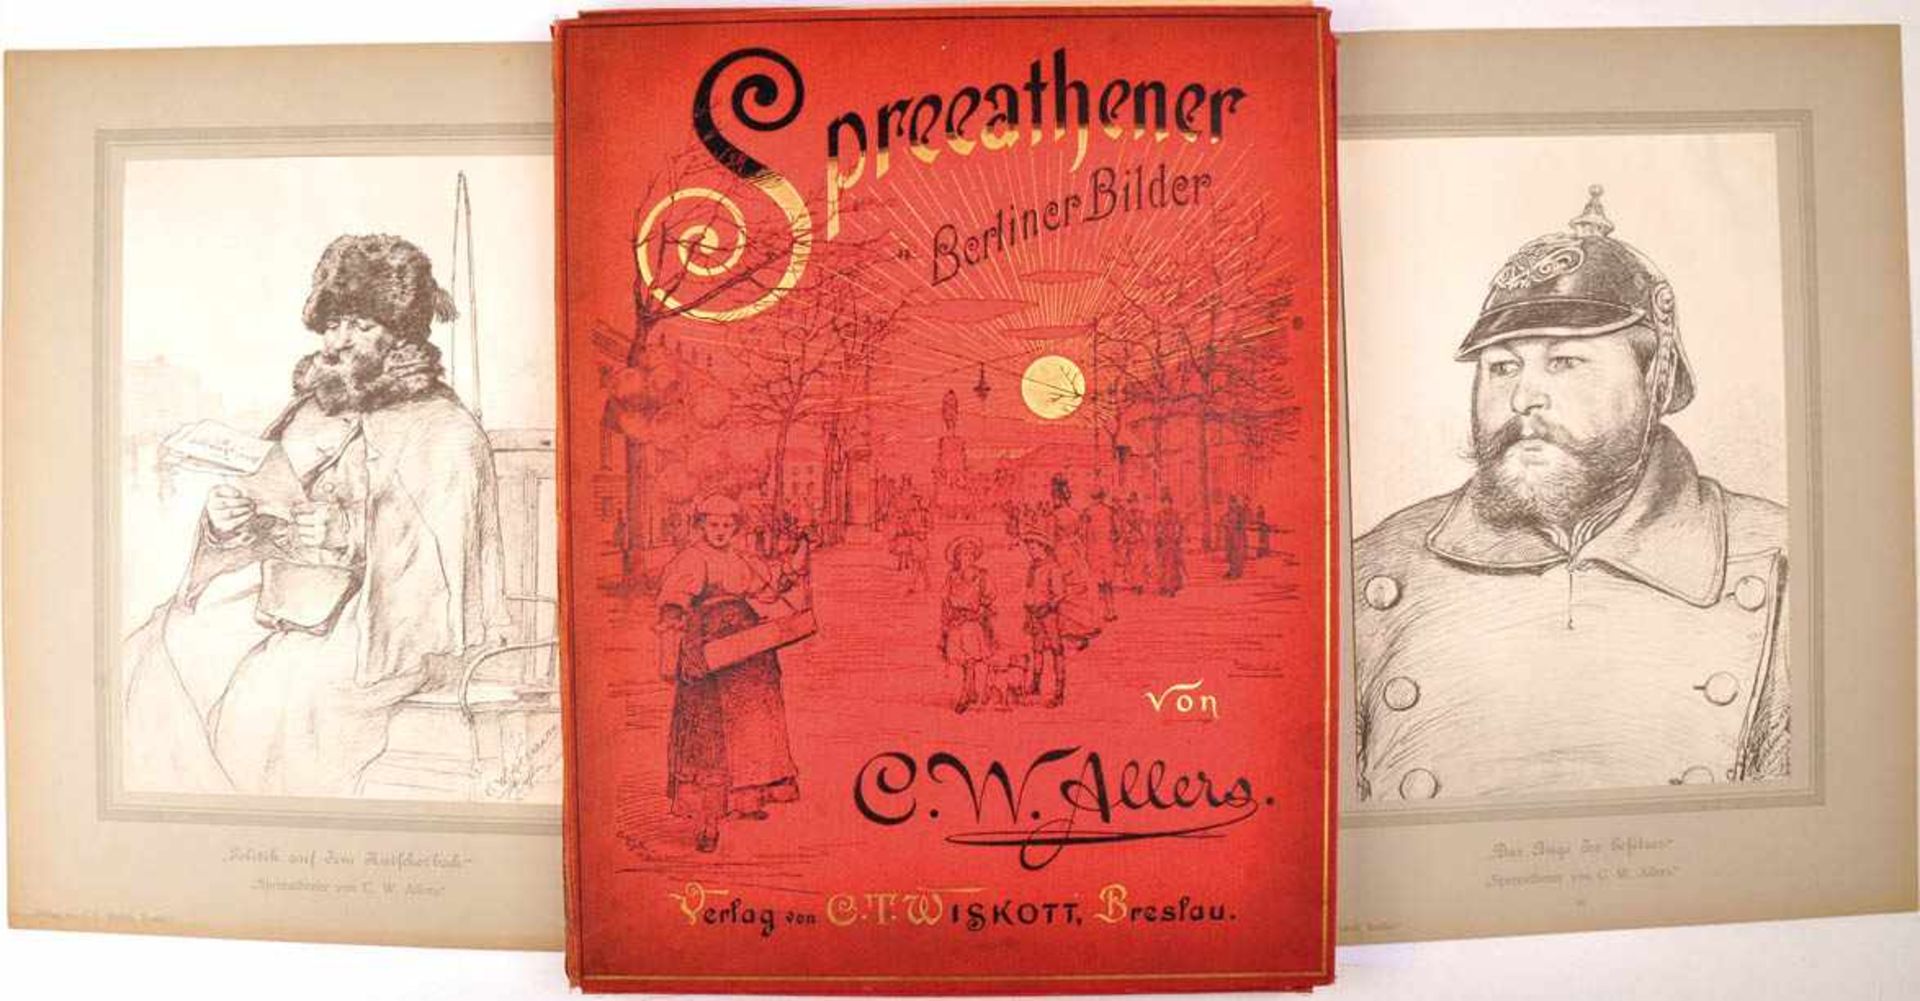 KÜNSTLERMAPPE „SPREEATHENER“ „Berliner Bilder von C.W. Allers“, Verlag Wiskott, Breslau um 1900,